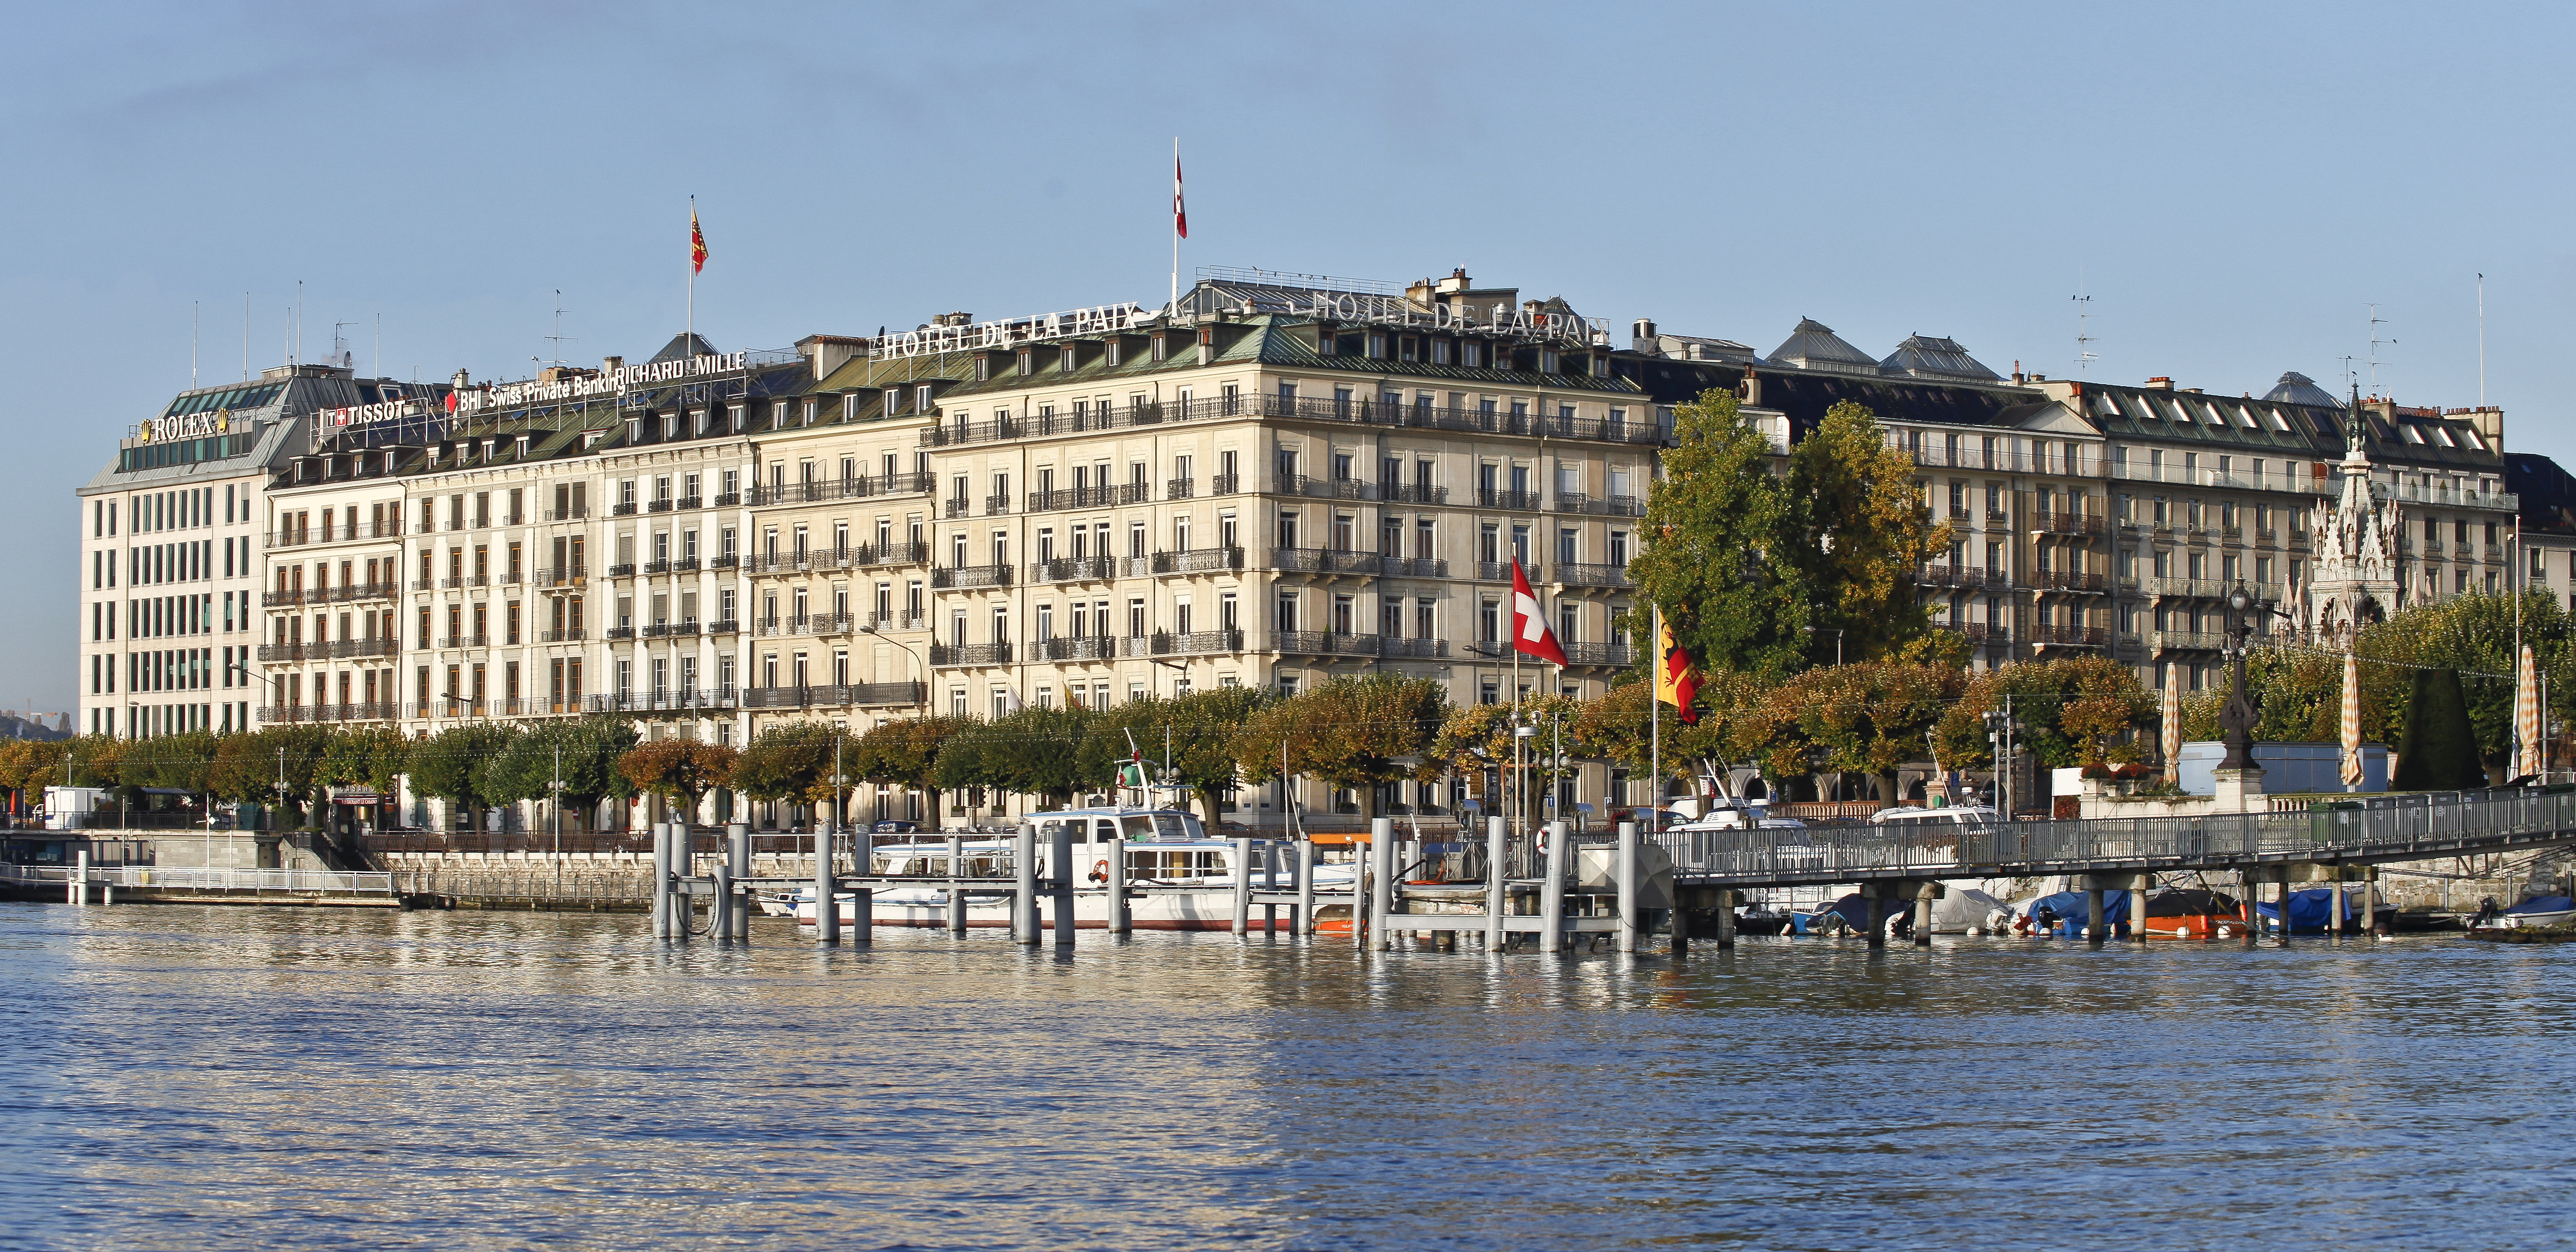 The Ritz-Carlton, Geneva.
